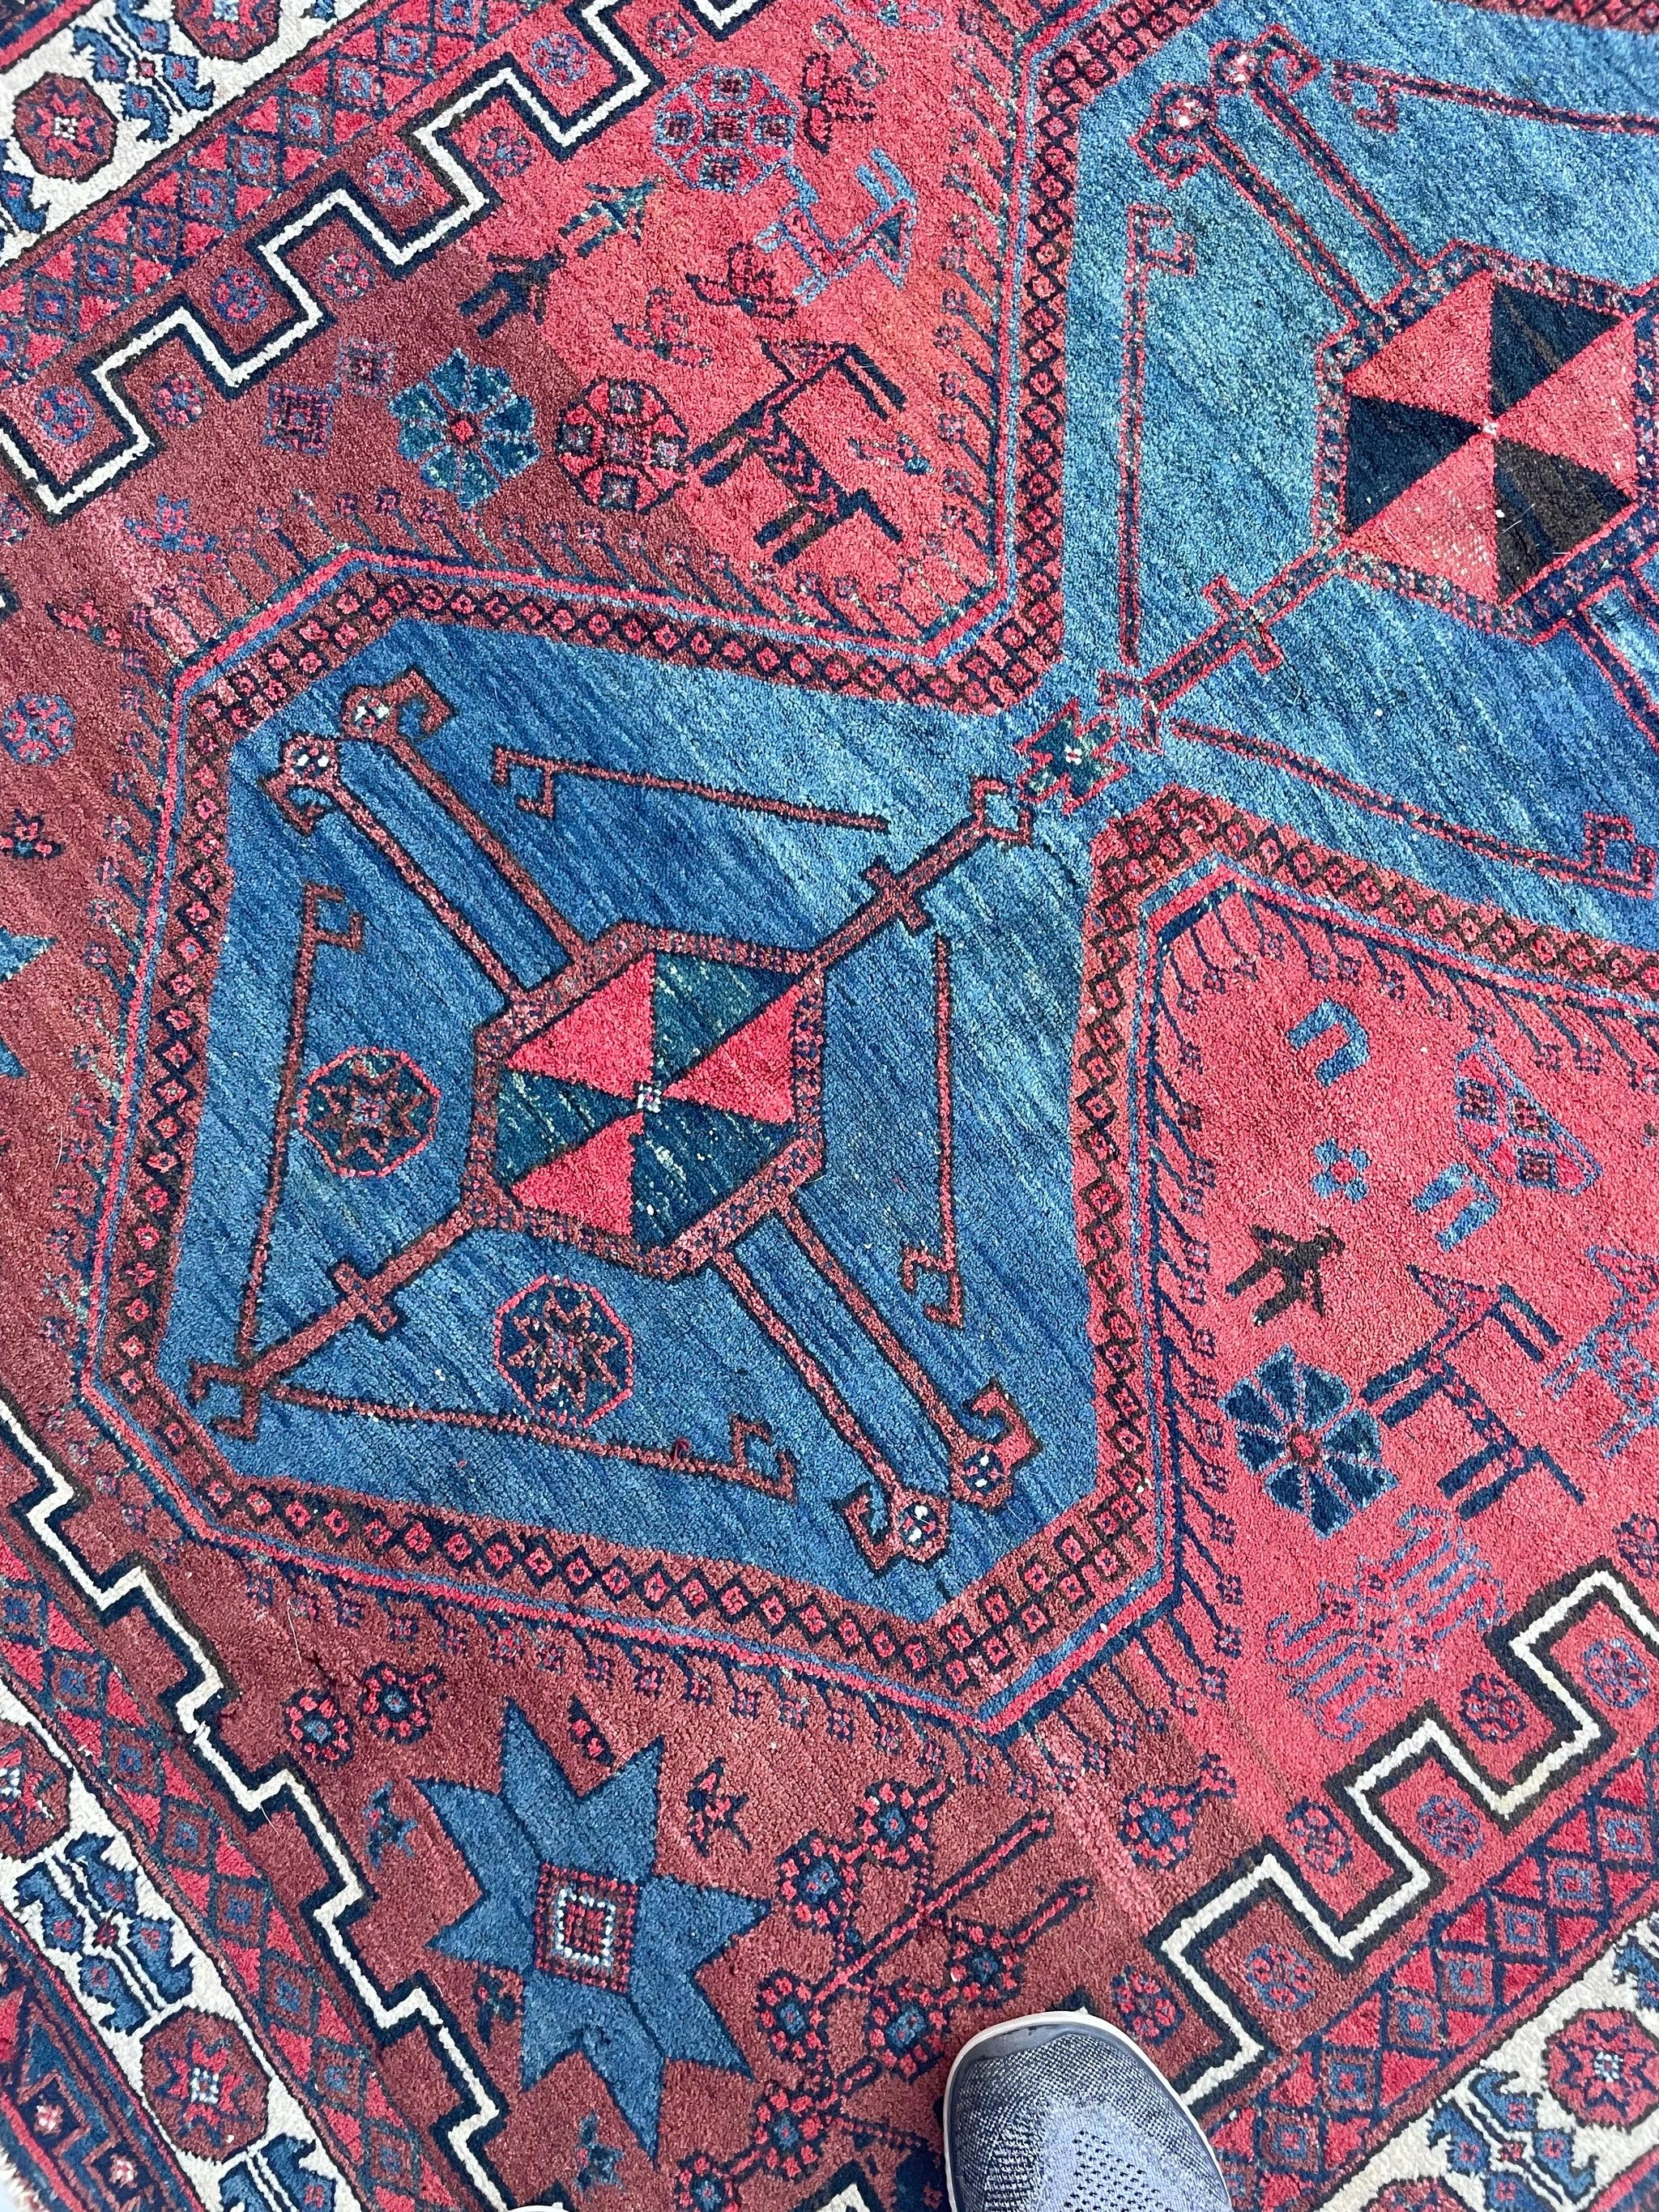 Tapis Unicorn Vintage Shiraz  La vie du village est omniprésente  Argile, Bleu glacier, Fusain

A propos : L'un de mes préférés - quelque chose dans les couleurs, le design et l'intention avec les chameaux, les gazelles, les cerfs et les oiseaux